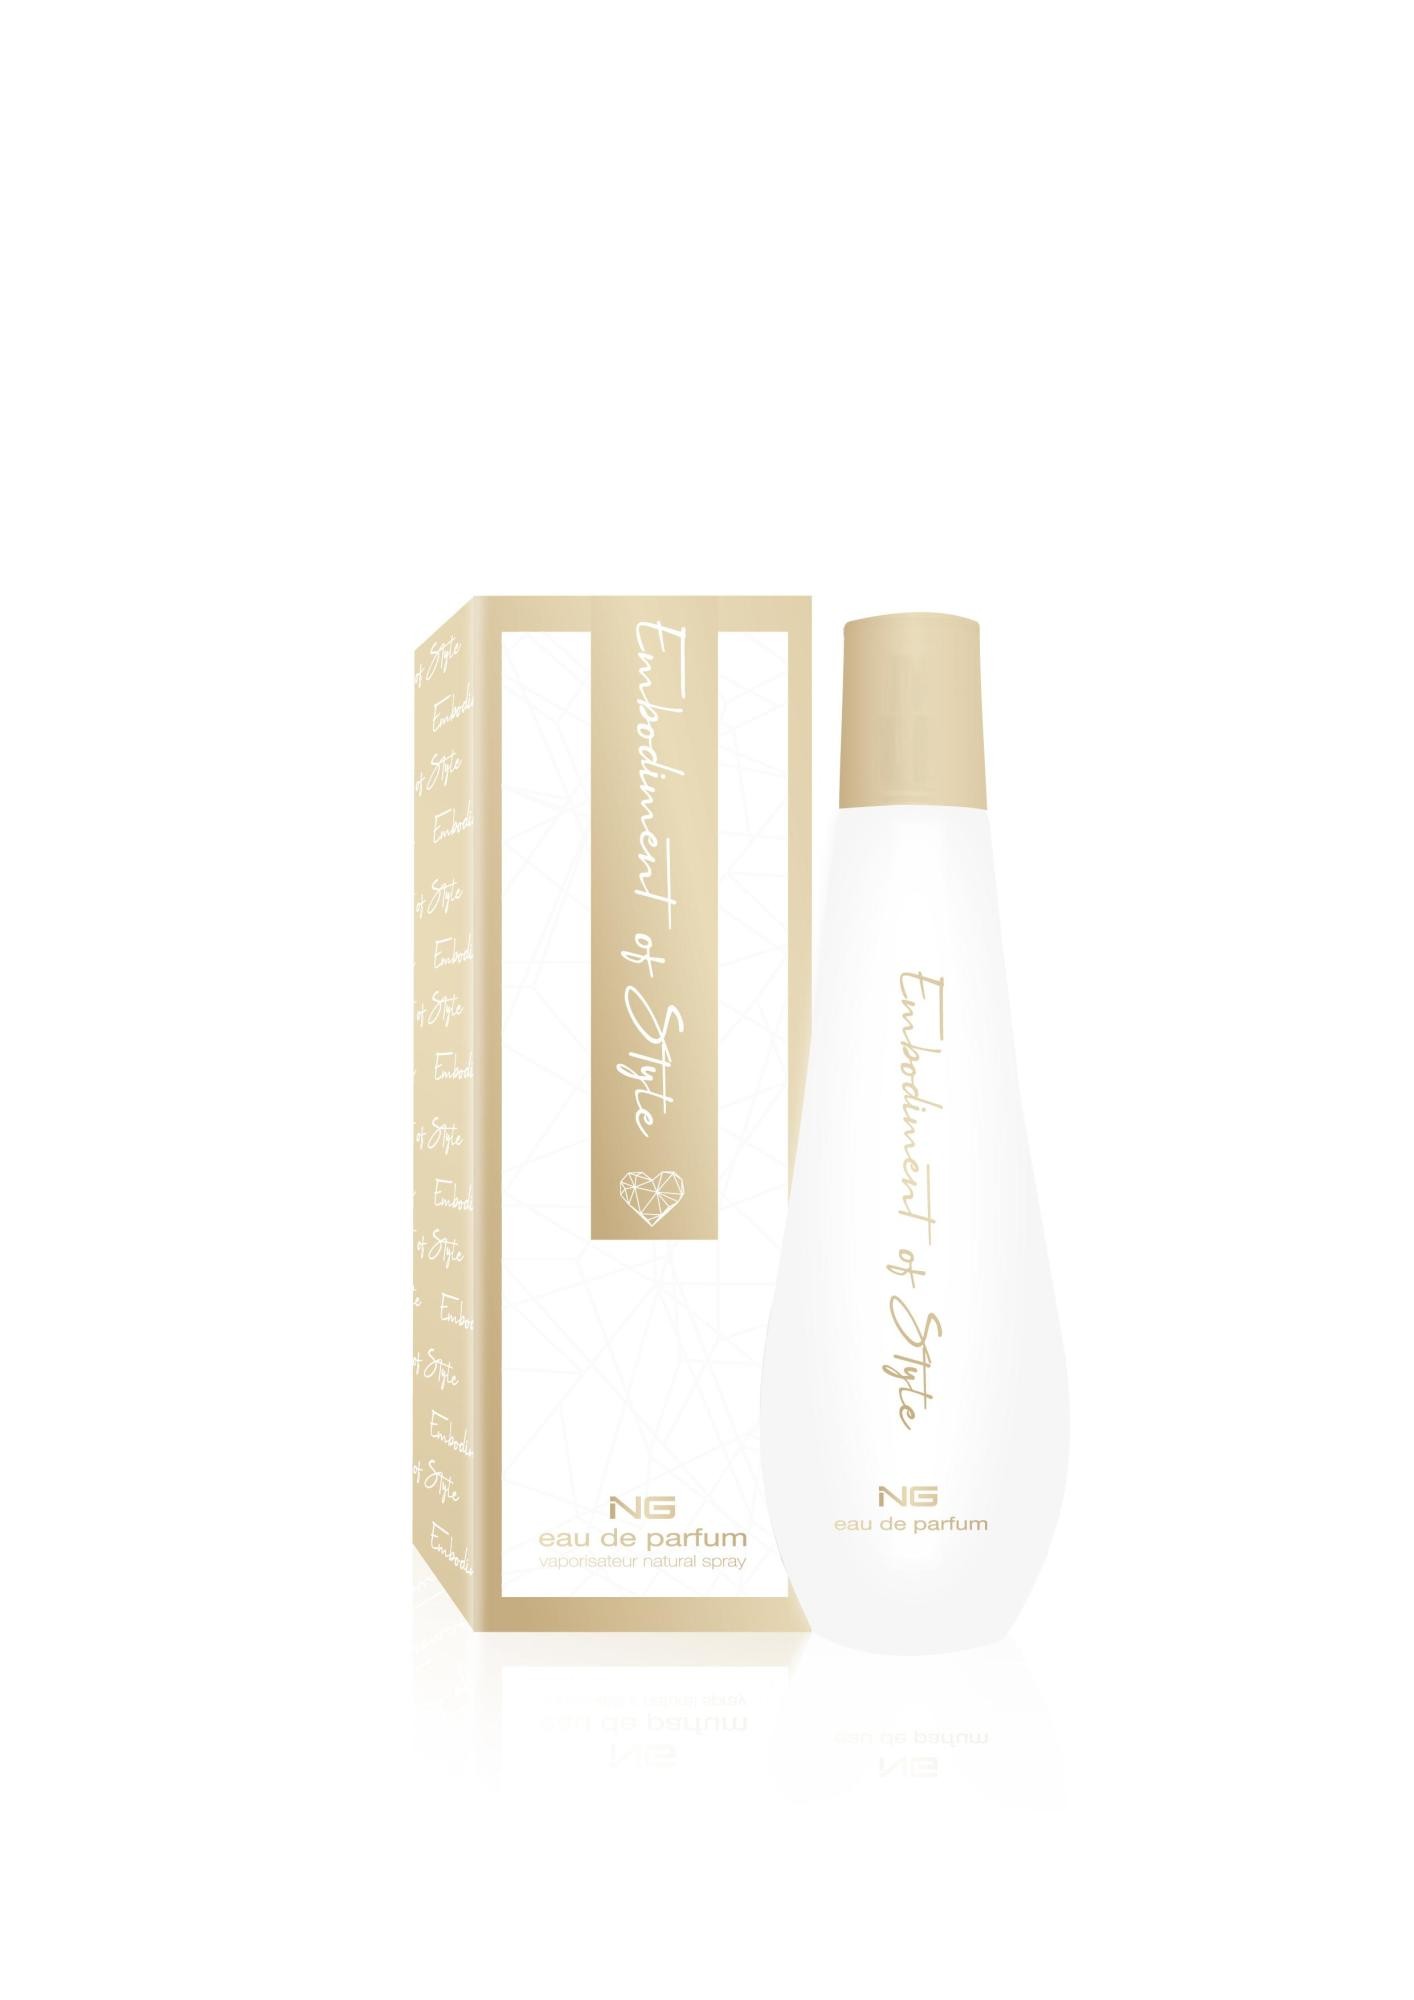 Next Generation Perfumes Embodiment Of Style eau de parfum 100ml